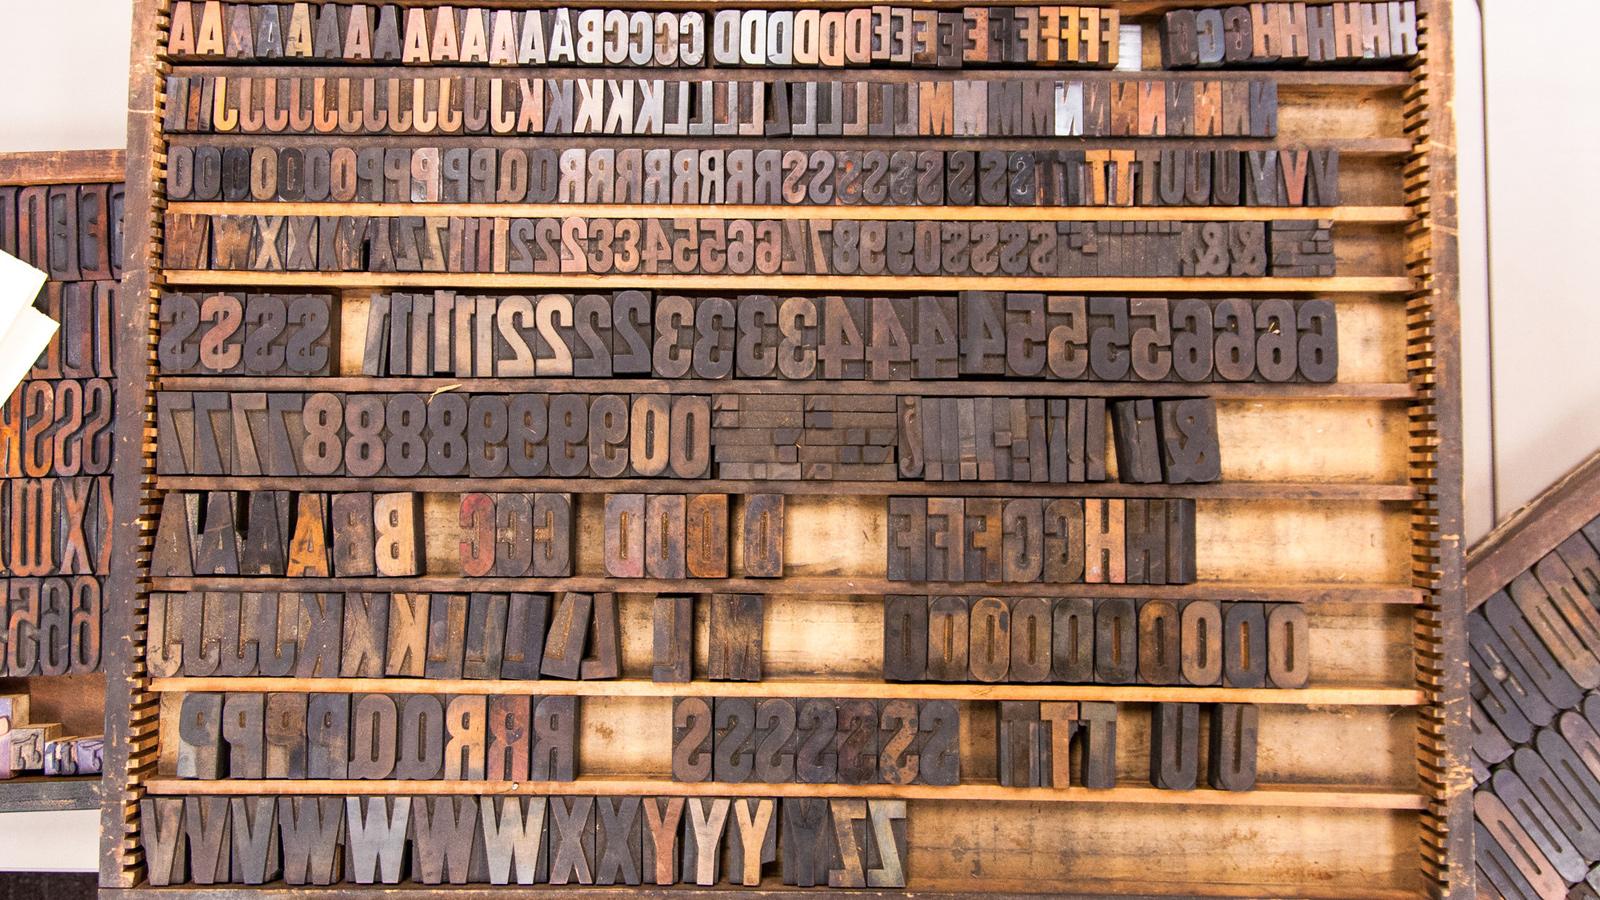 Letters of a letterpress arranged on a shelf.